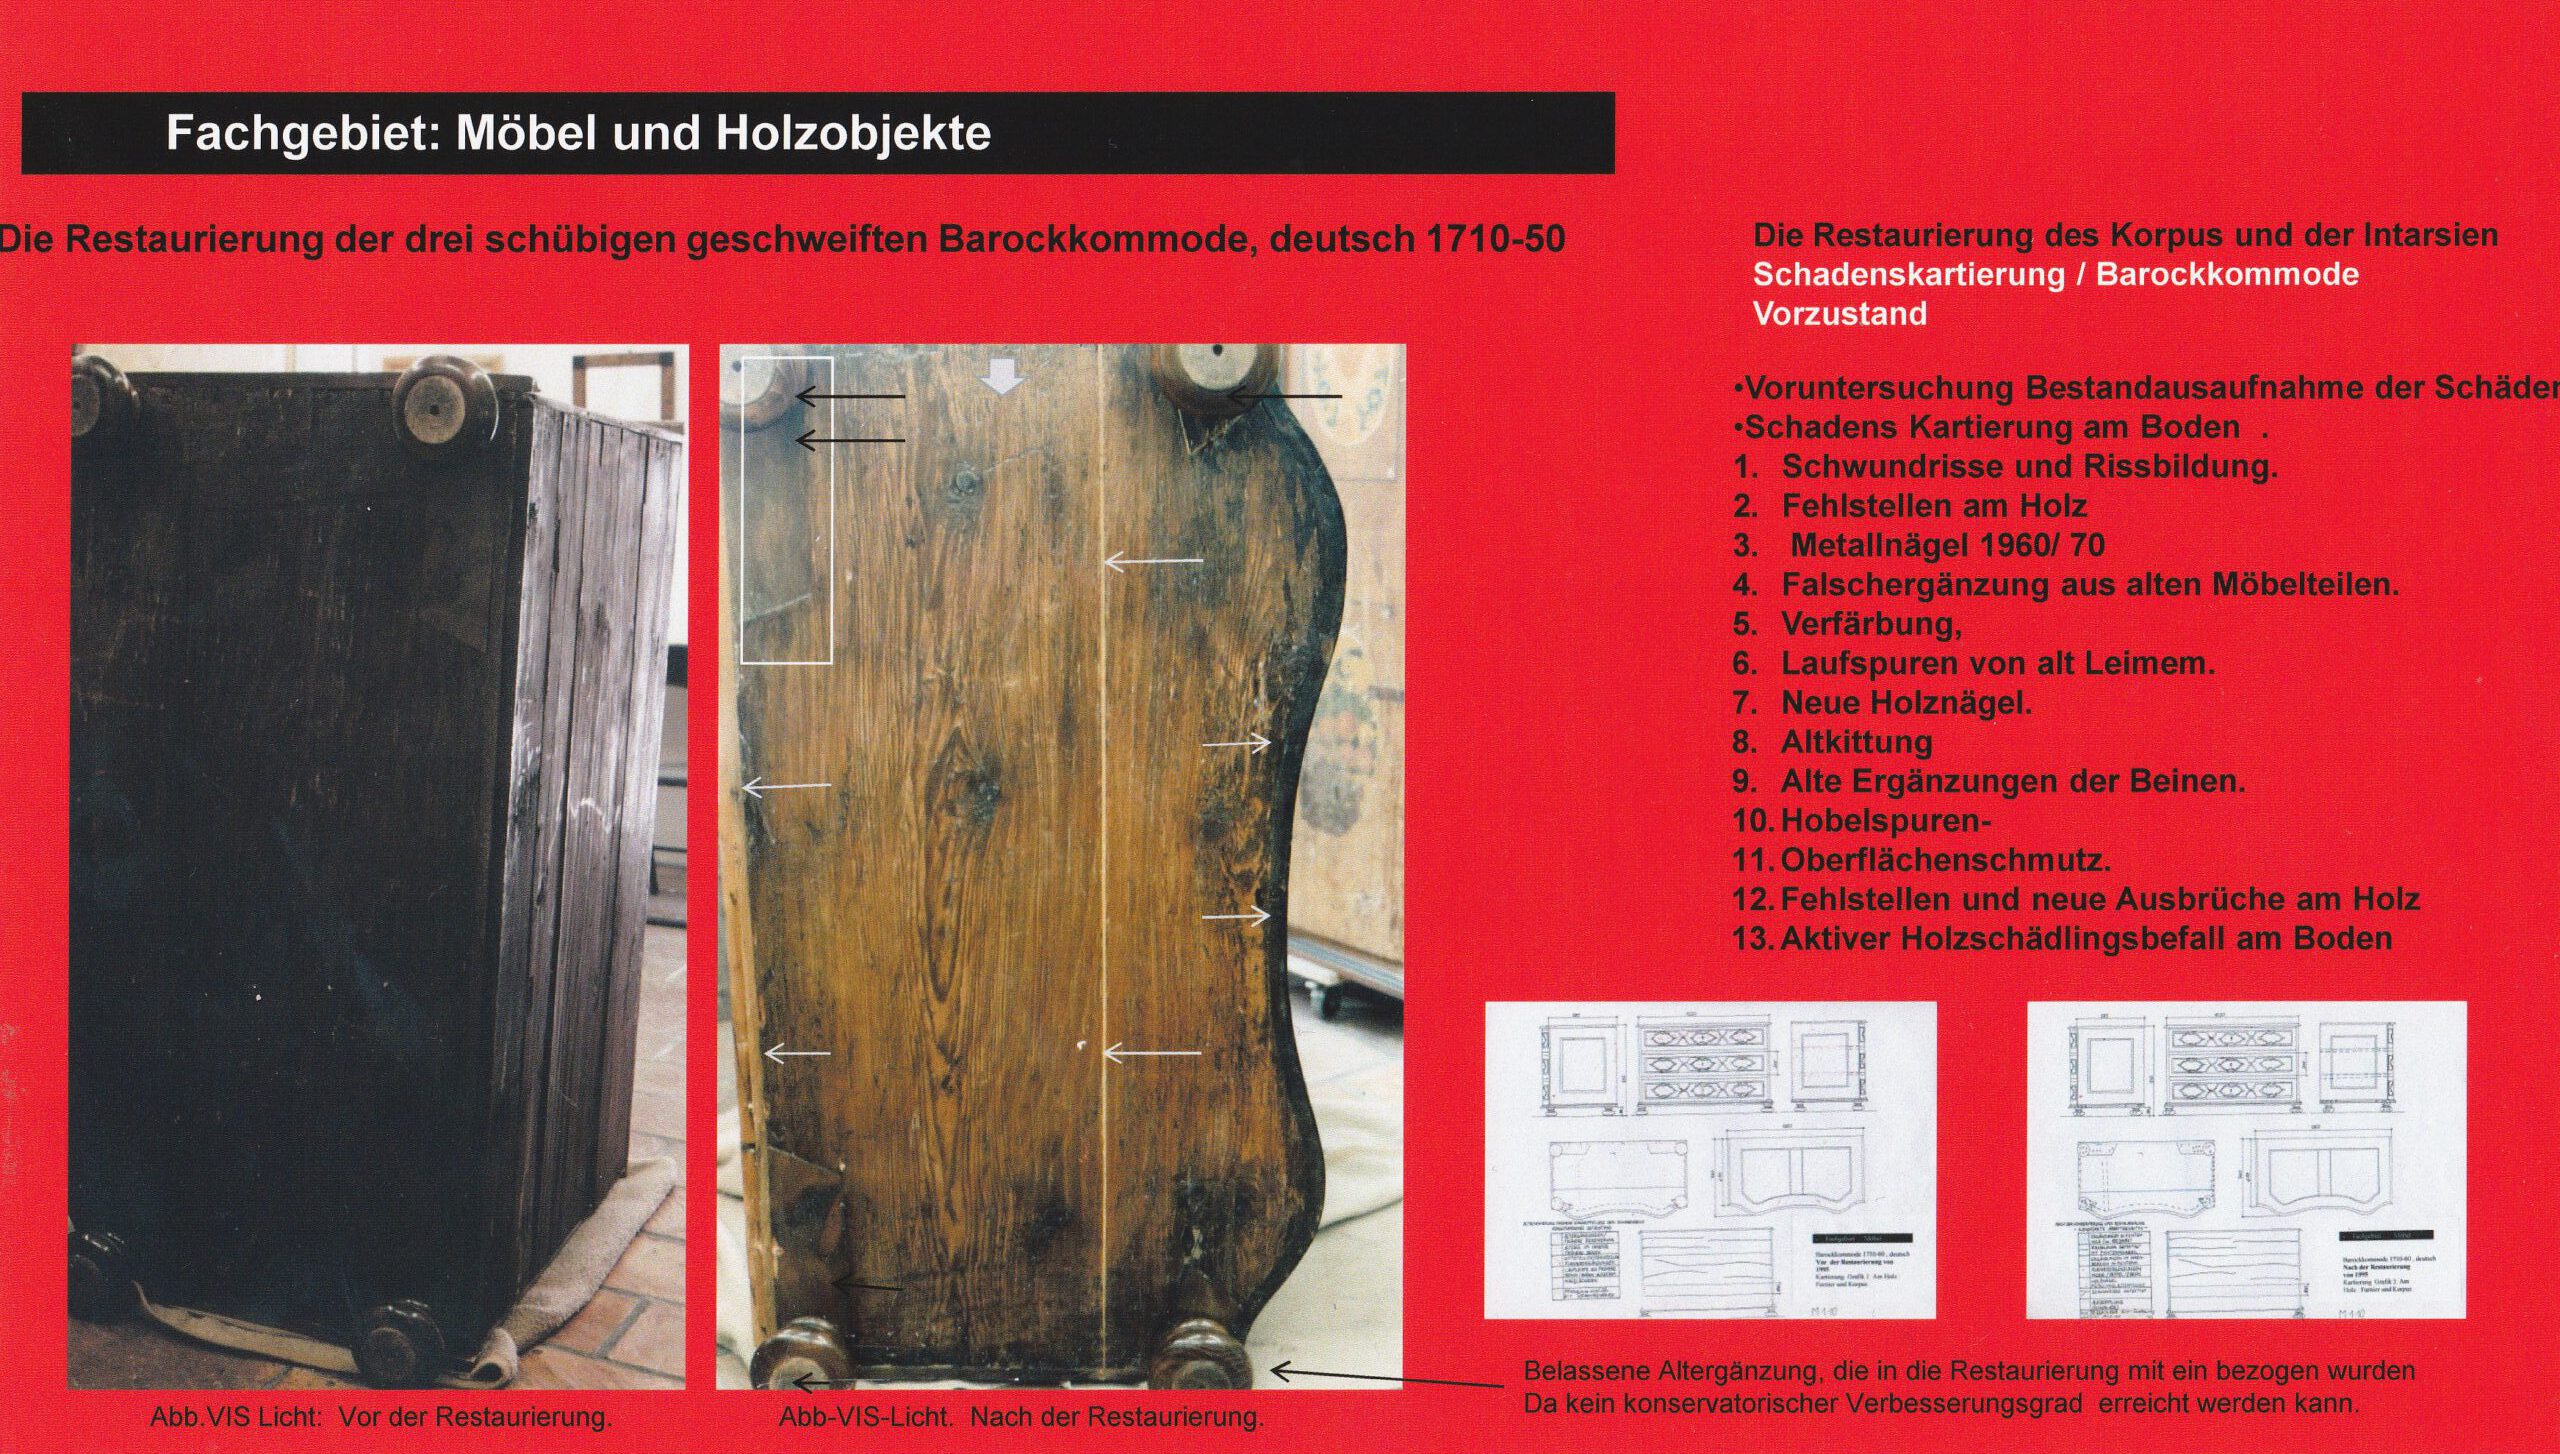 Dokumentation in der Restaurierung Fachgebiet Möbel und Holzobjekte